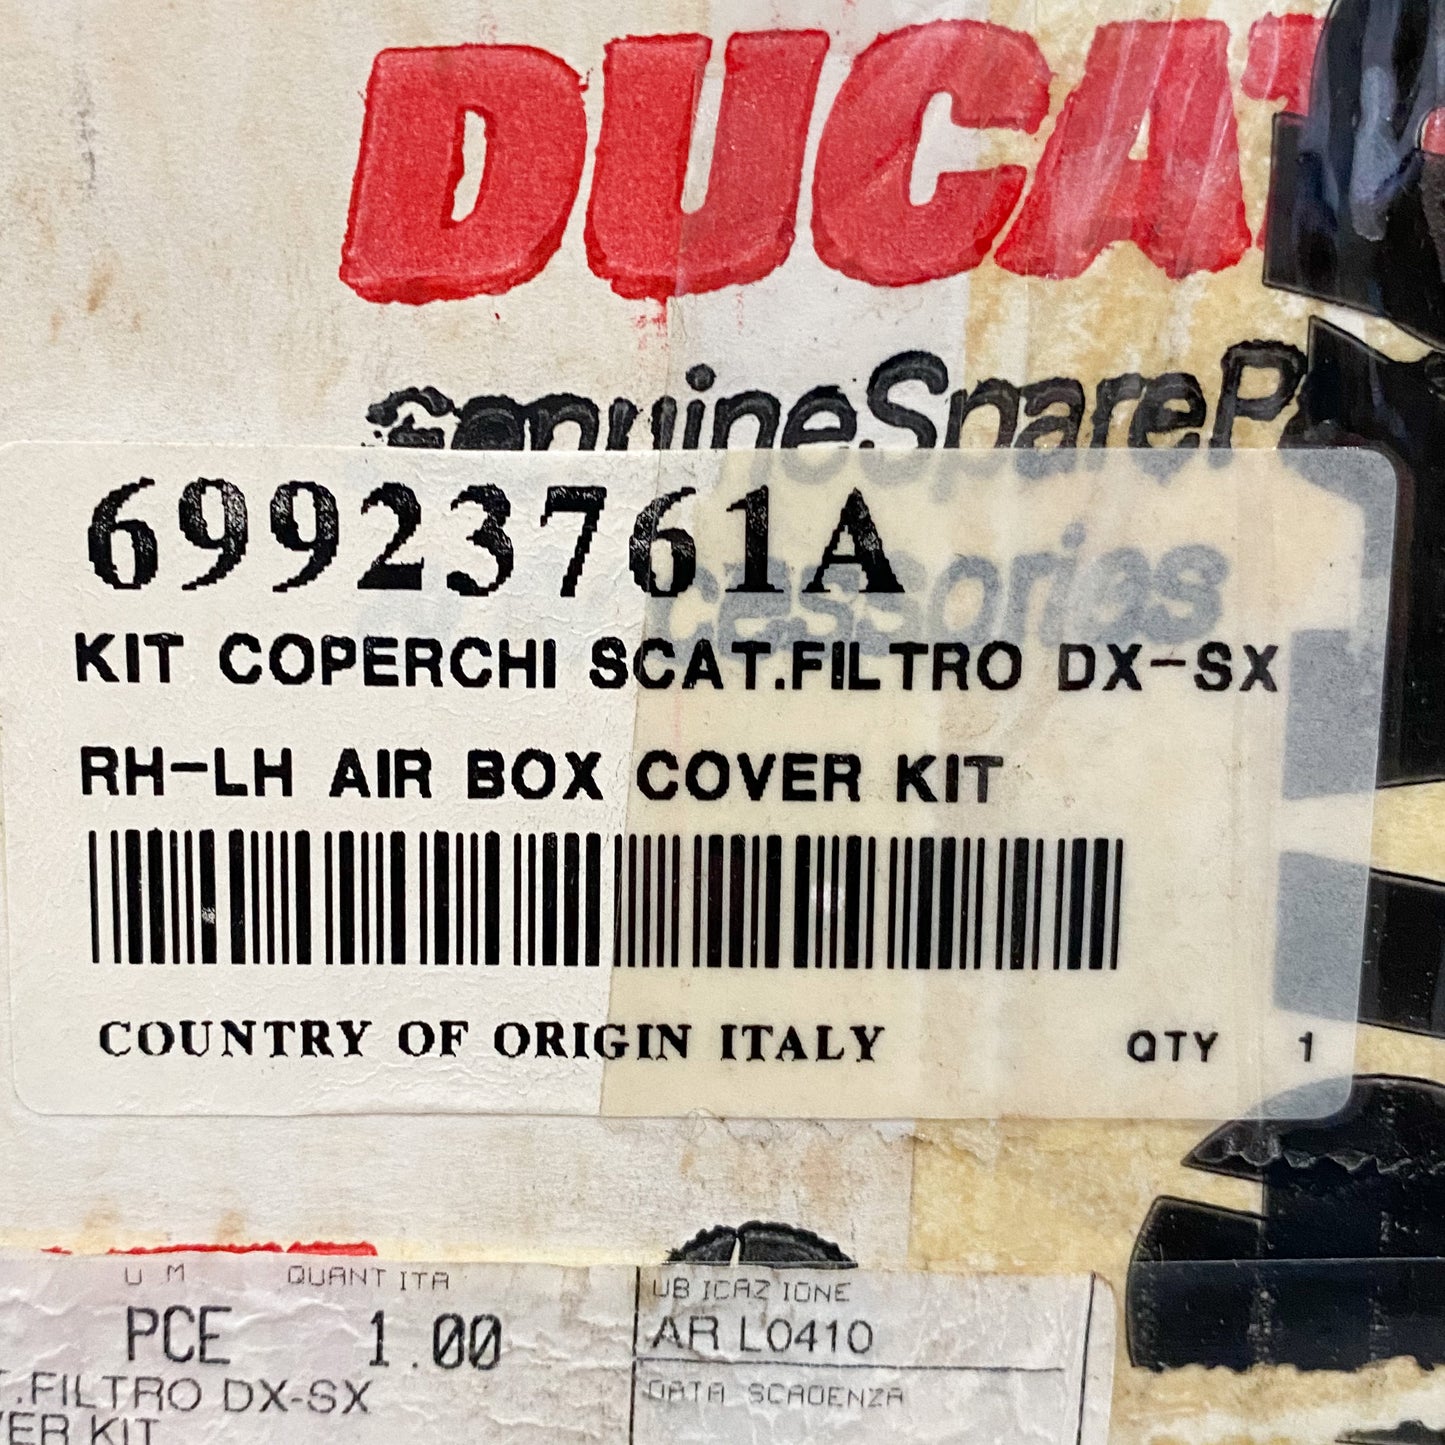 Ducati RH - LH Air Box Cover Kit 748/916/996/998 69923761A